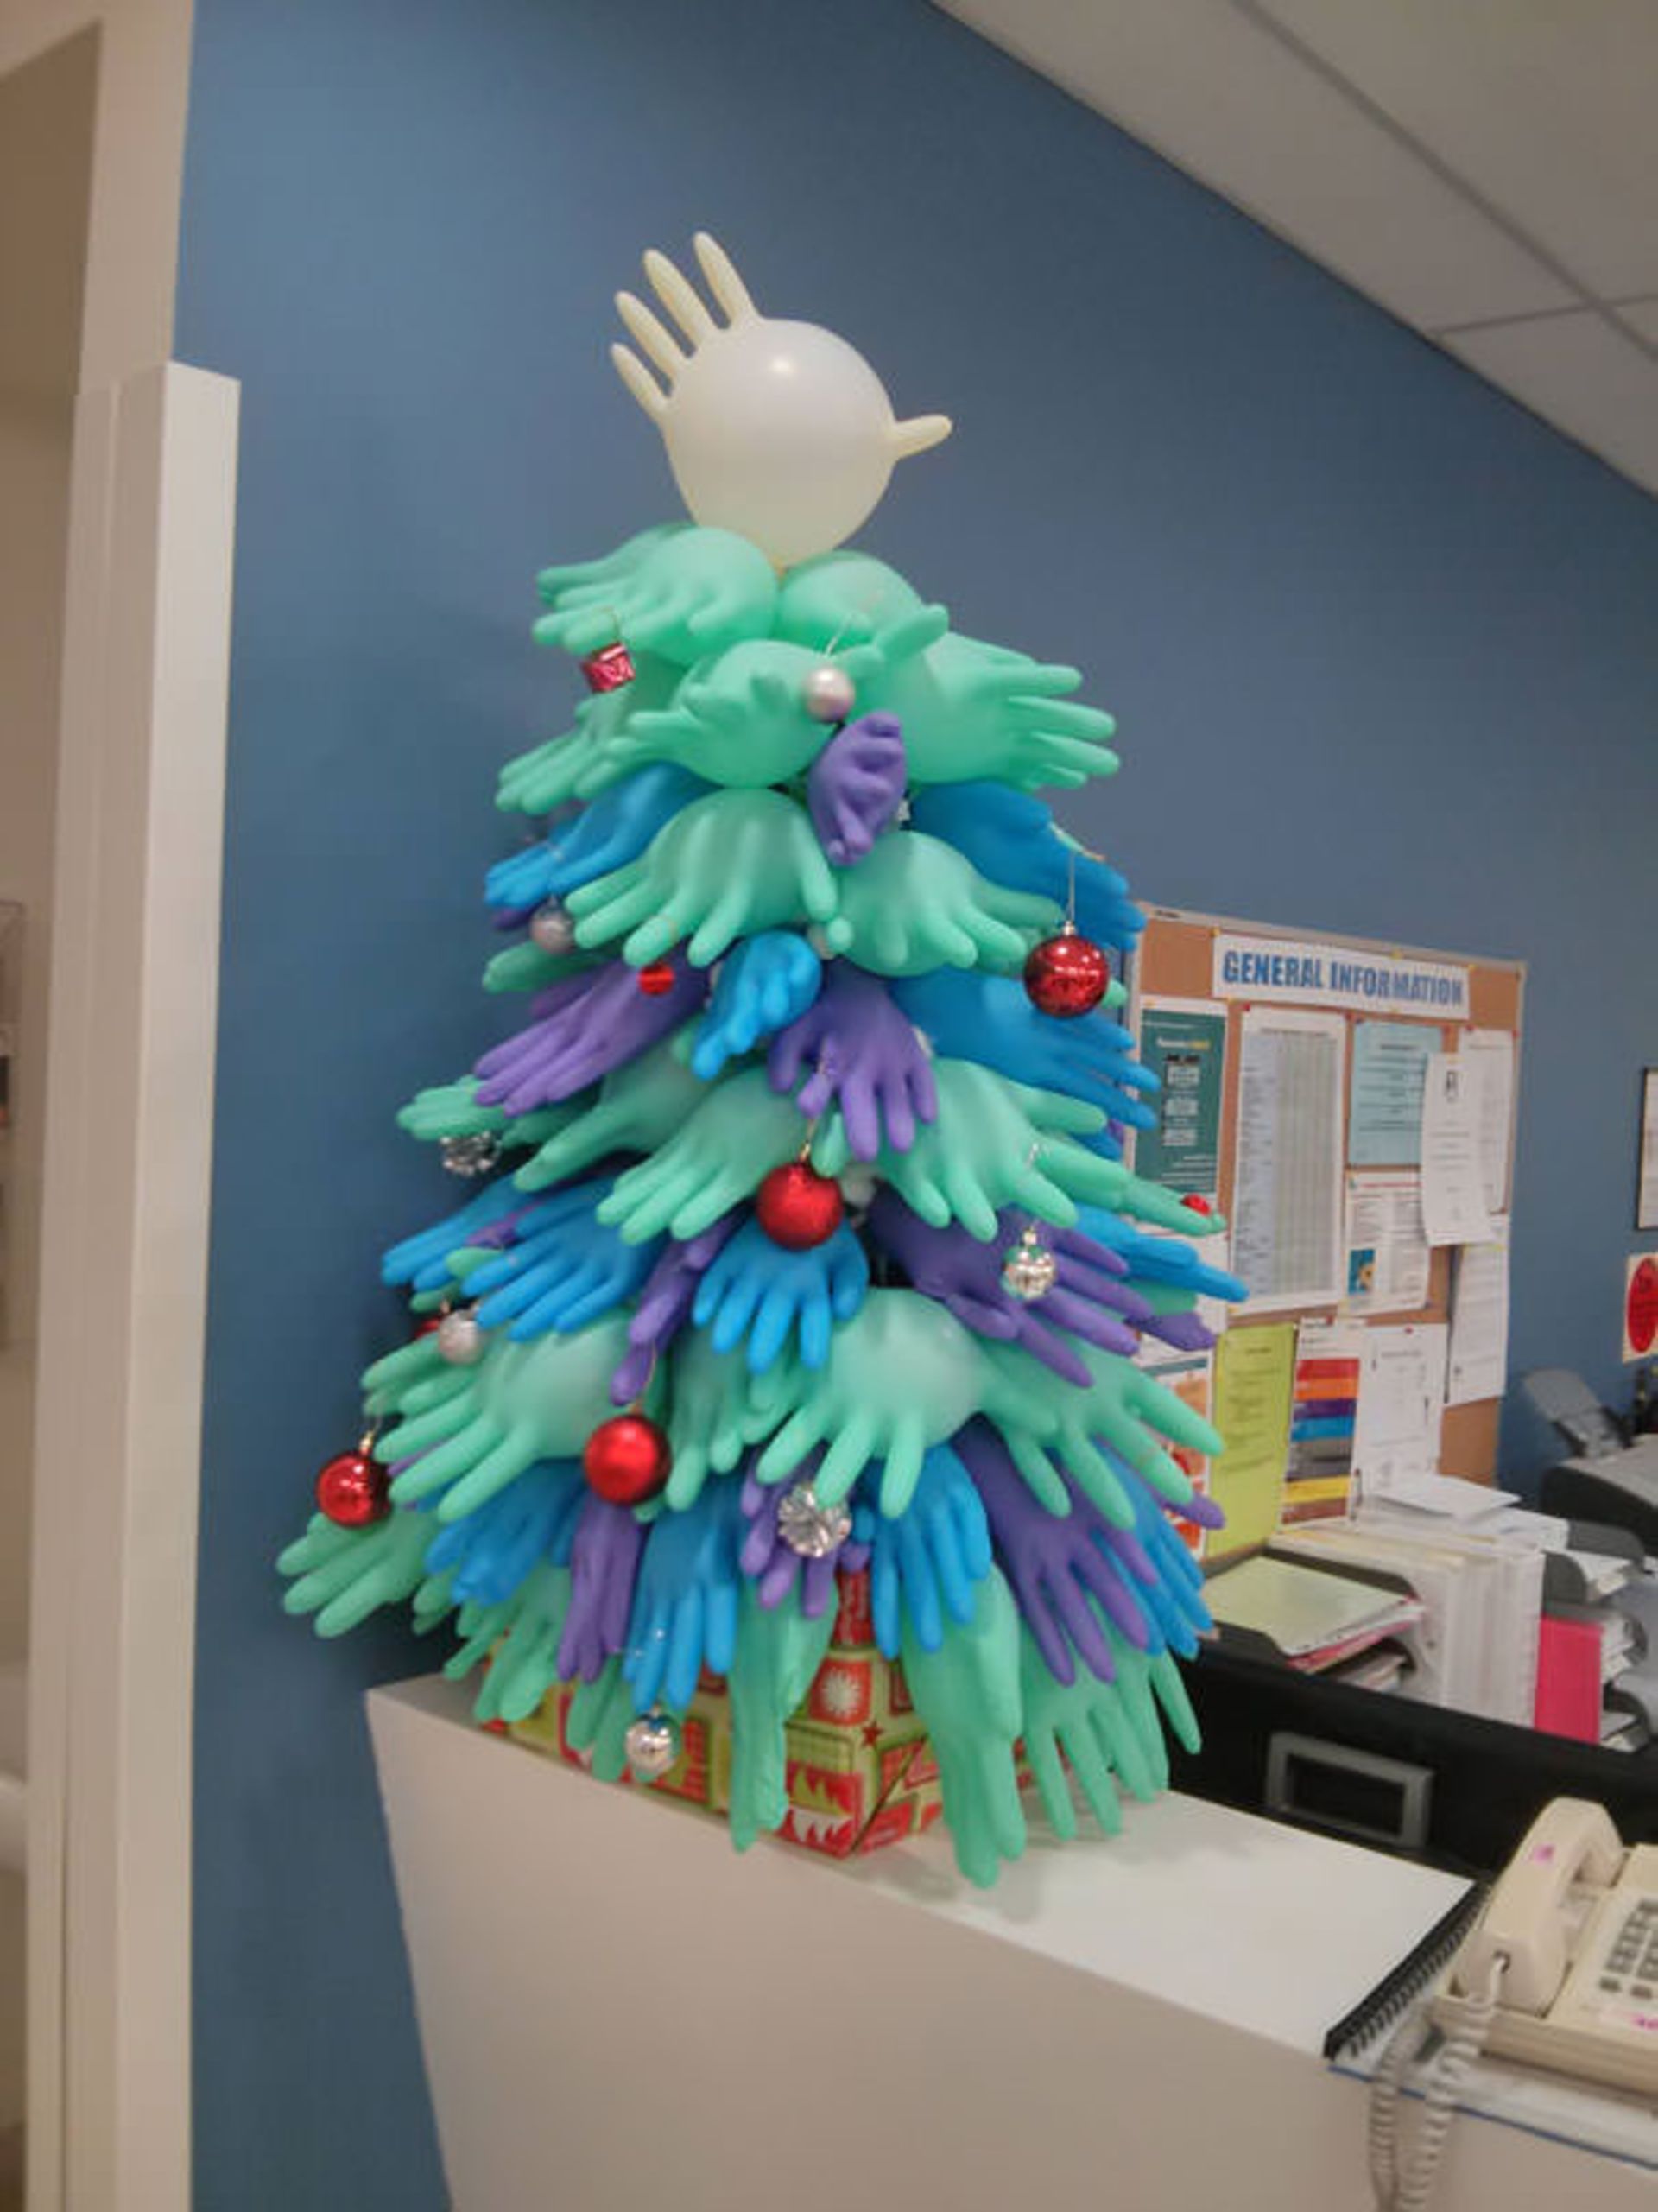 خلاقیت کارکنان بیمارستان در استقبال از کریسمس